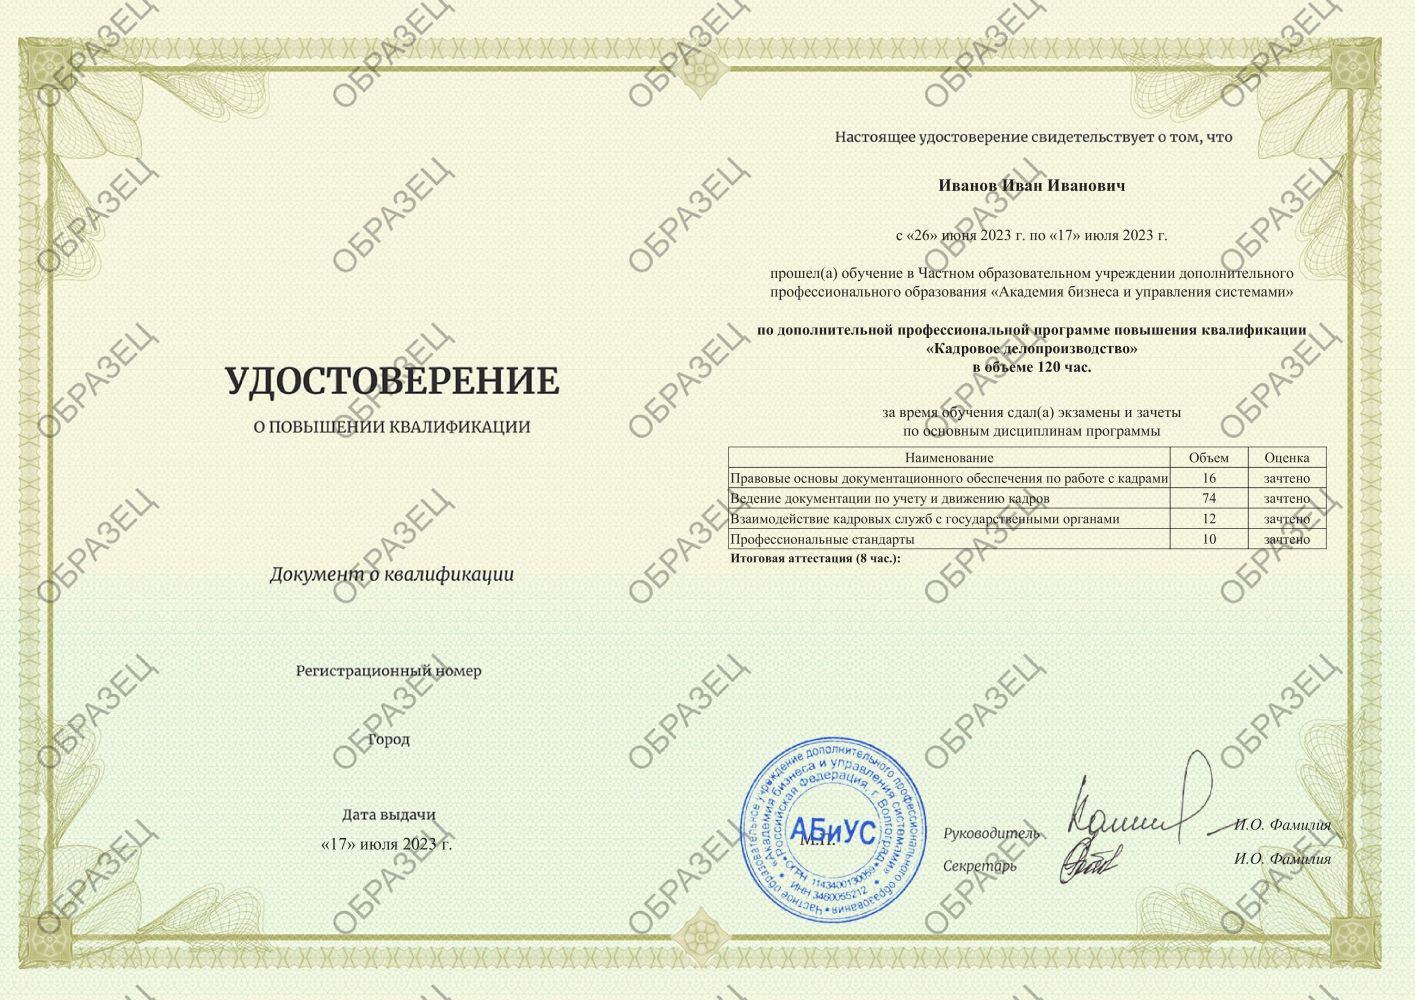 Удостоверение Кадровое делопроизводство 120 часов 7875 руб.